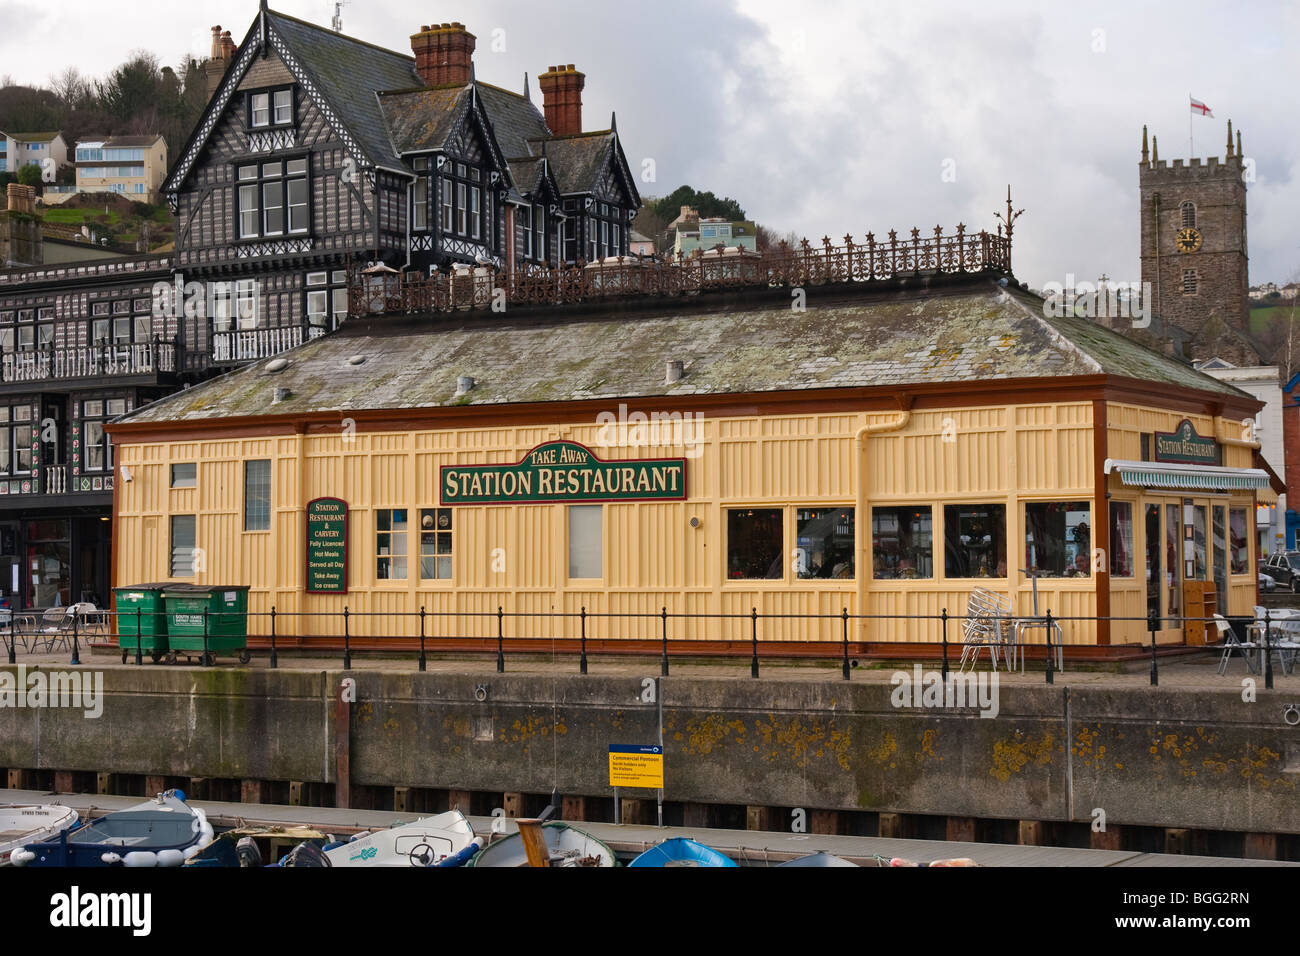 The 'Station restaurant' in Dartmouth, Devon Stock Photo